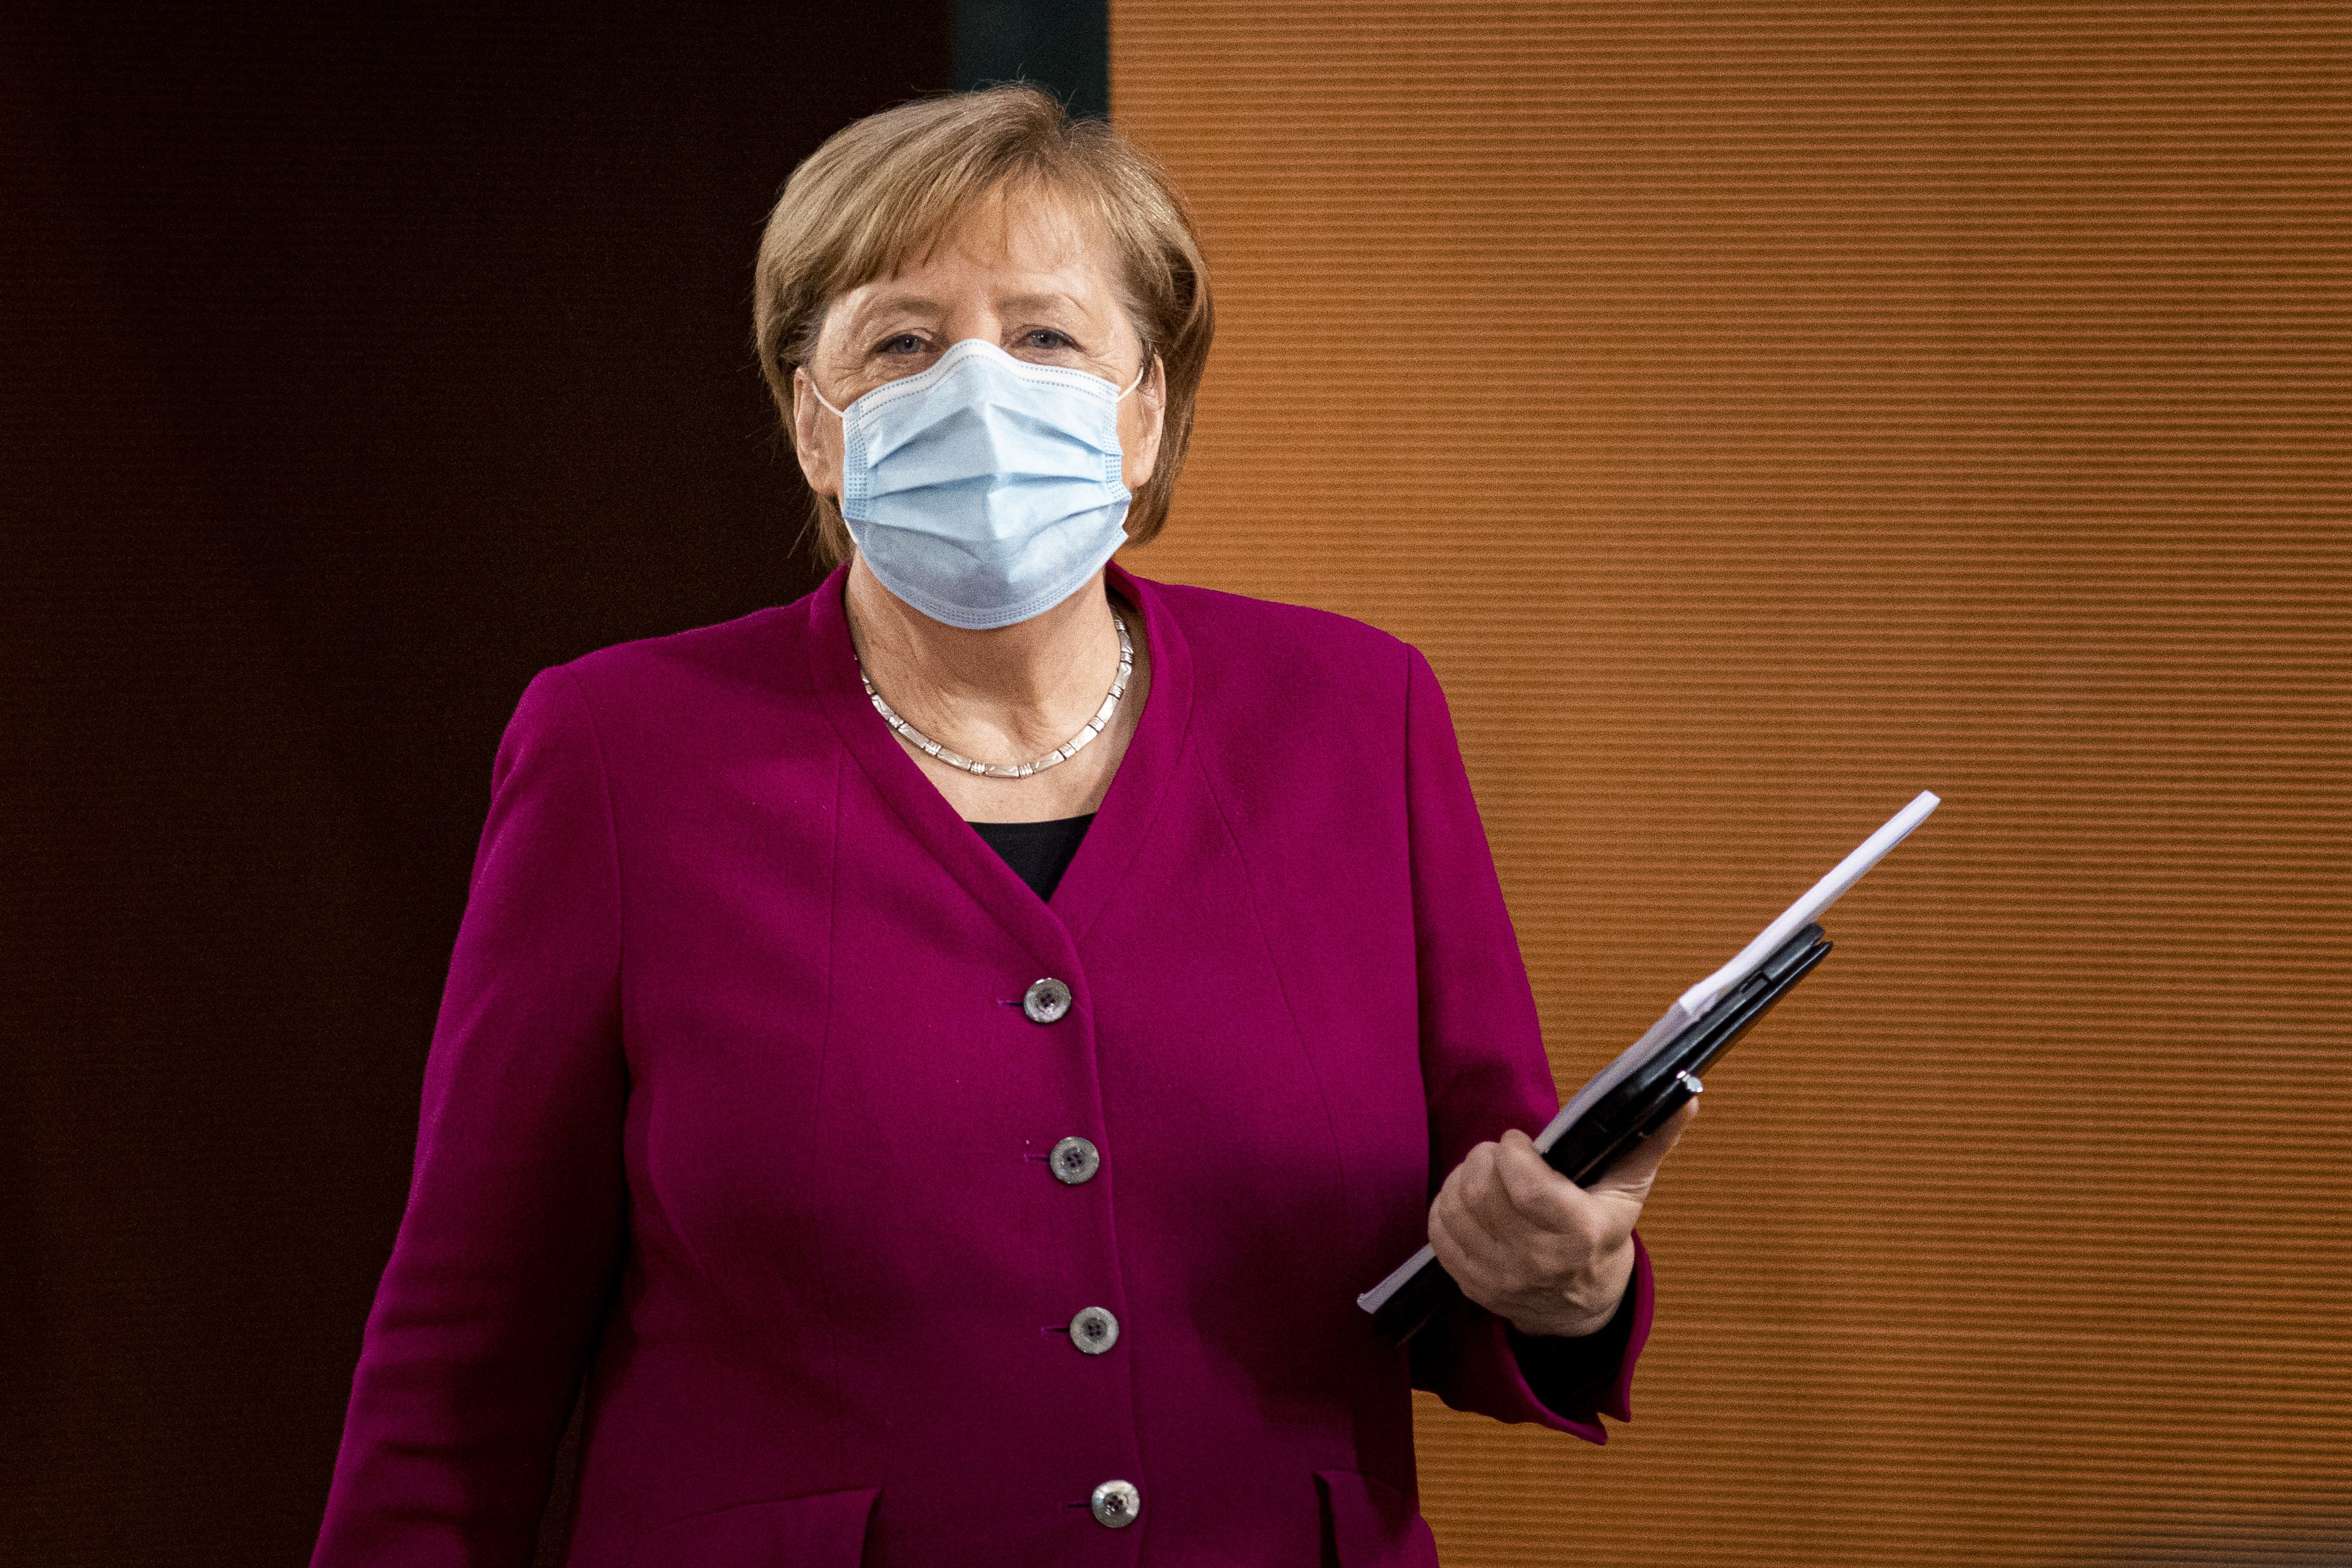 Bundeskanzlerin Angela Merkel ist während der wöchentlichen Kabinettssitzung am 14. Oktober 2020 in Berlin abgebildet. | Quelle: Getty Images